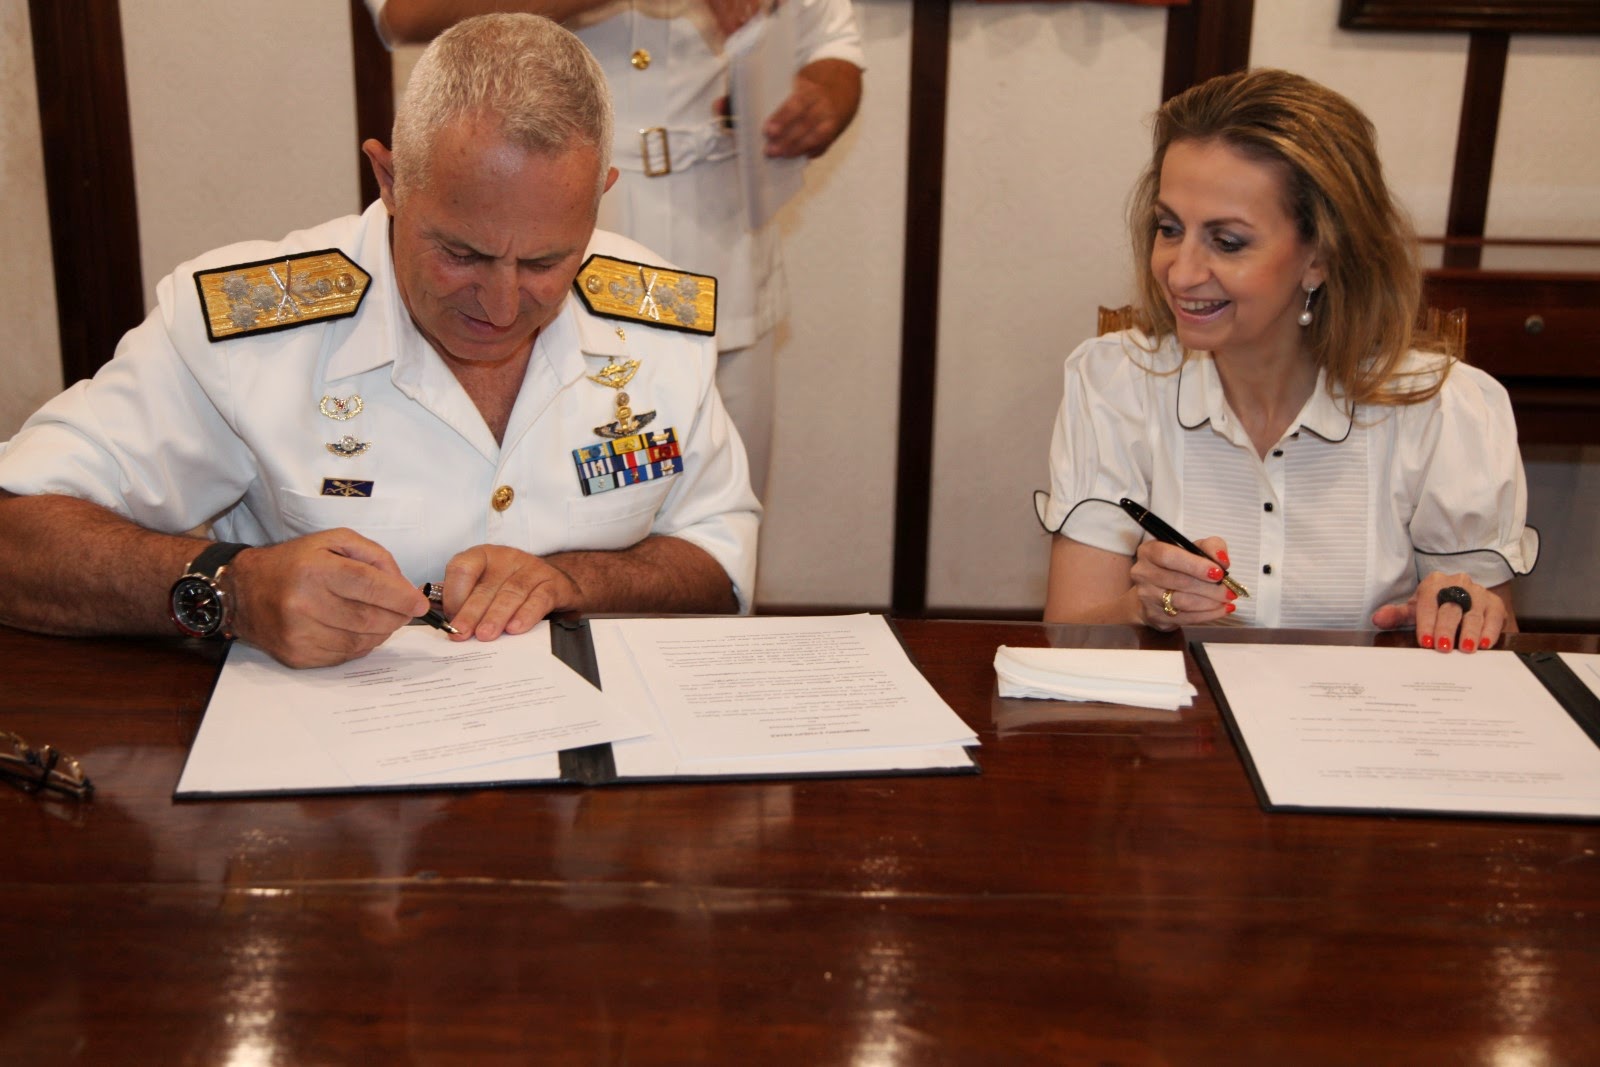 Υπογραφή Μνημονίου Συνεργασίας μεταξύ του Πολεμικού Ναυτικού και του Ιδρύματος Μείζονος Ελληνισμού - Φωτογραφία 1